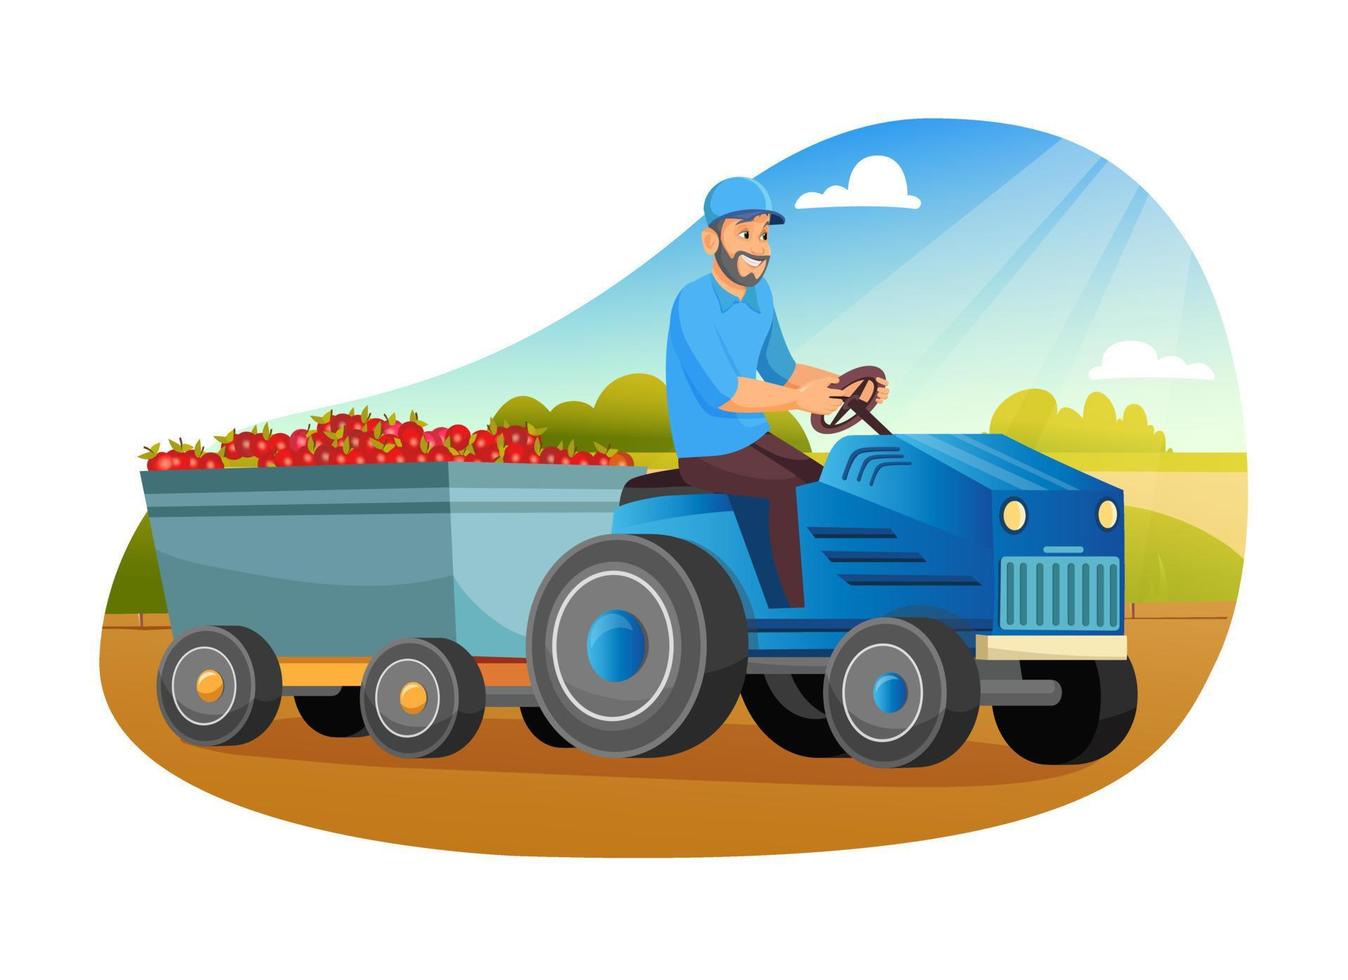 Bauern laden Äpfel auf Traktoranhänger. Bio-Lebensmittel aus lokaler Landwirtschaft, umweltfreundliche saisonale Produkte. vektor